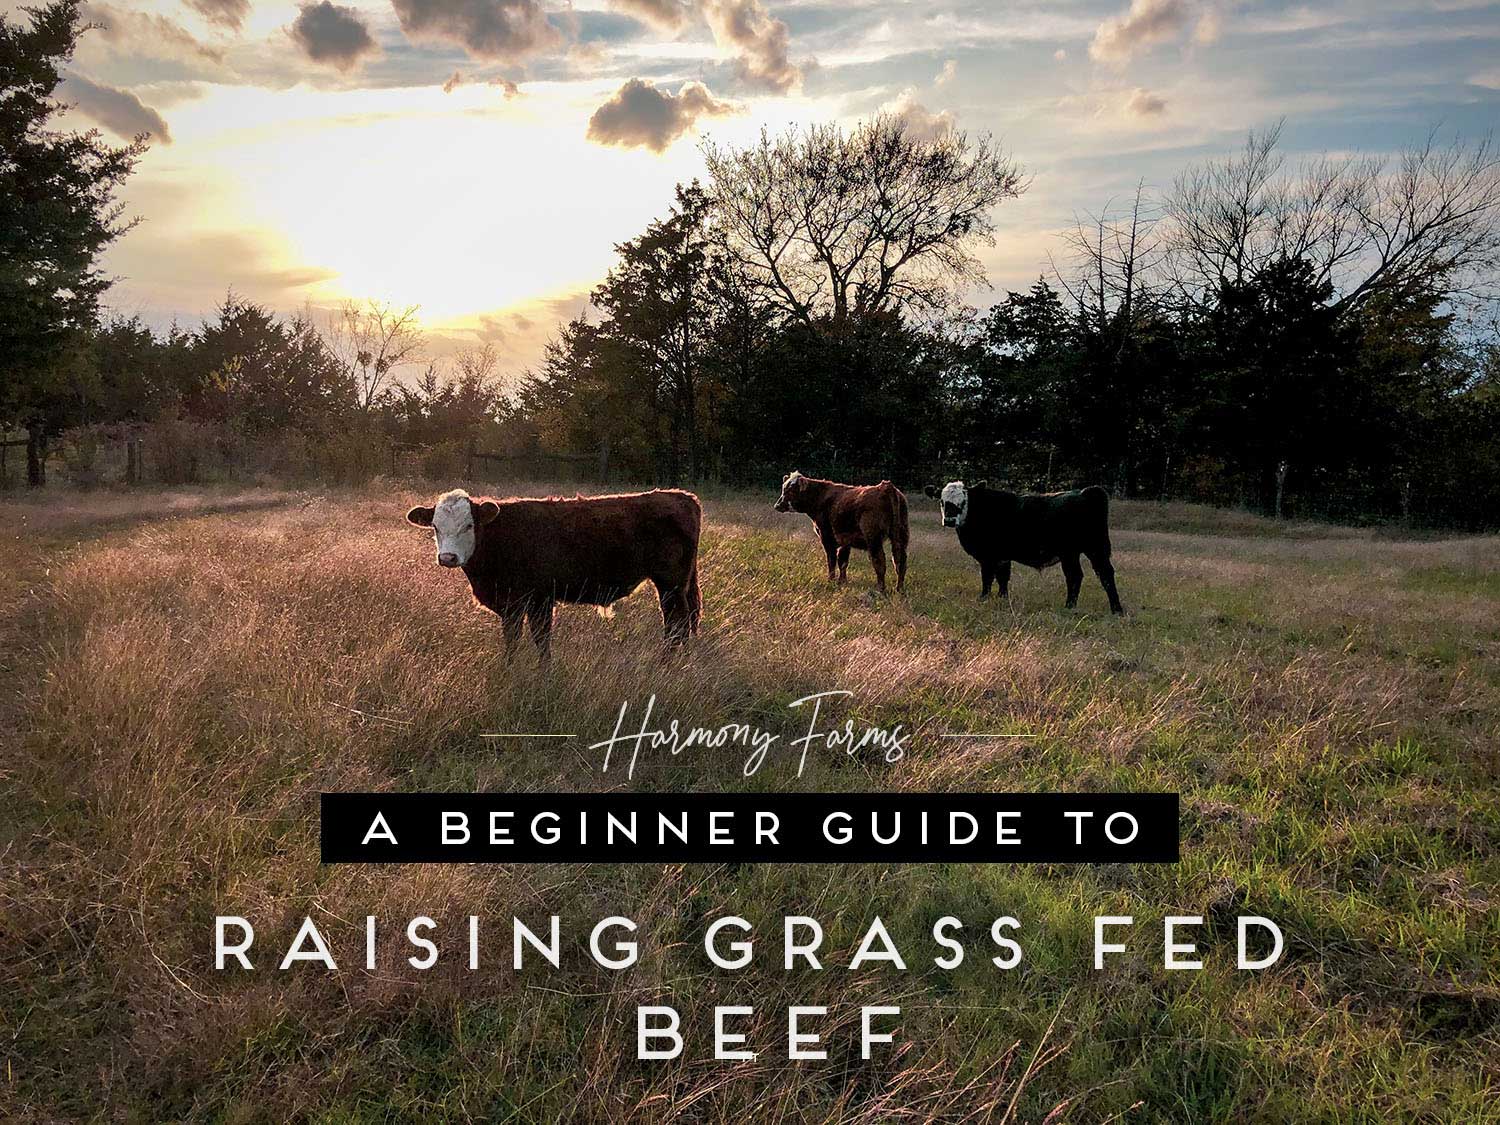 https://www.shepherdess.com/wp-content/uploads/2020/12/A-Beginner-Guide-to-Raising-Grass-Fed-Beef.jpg